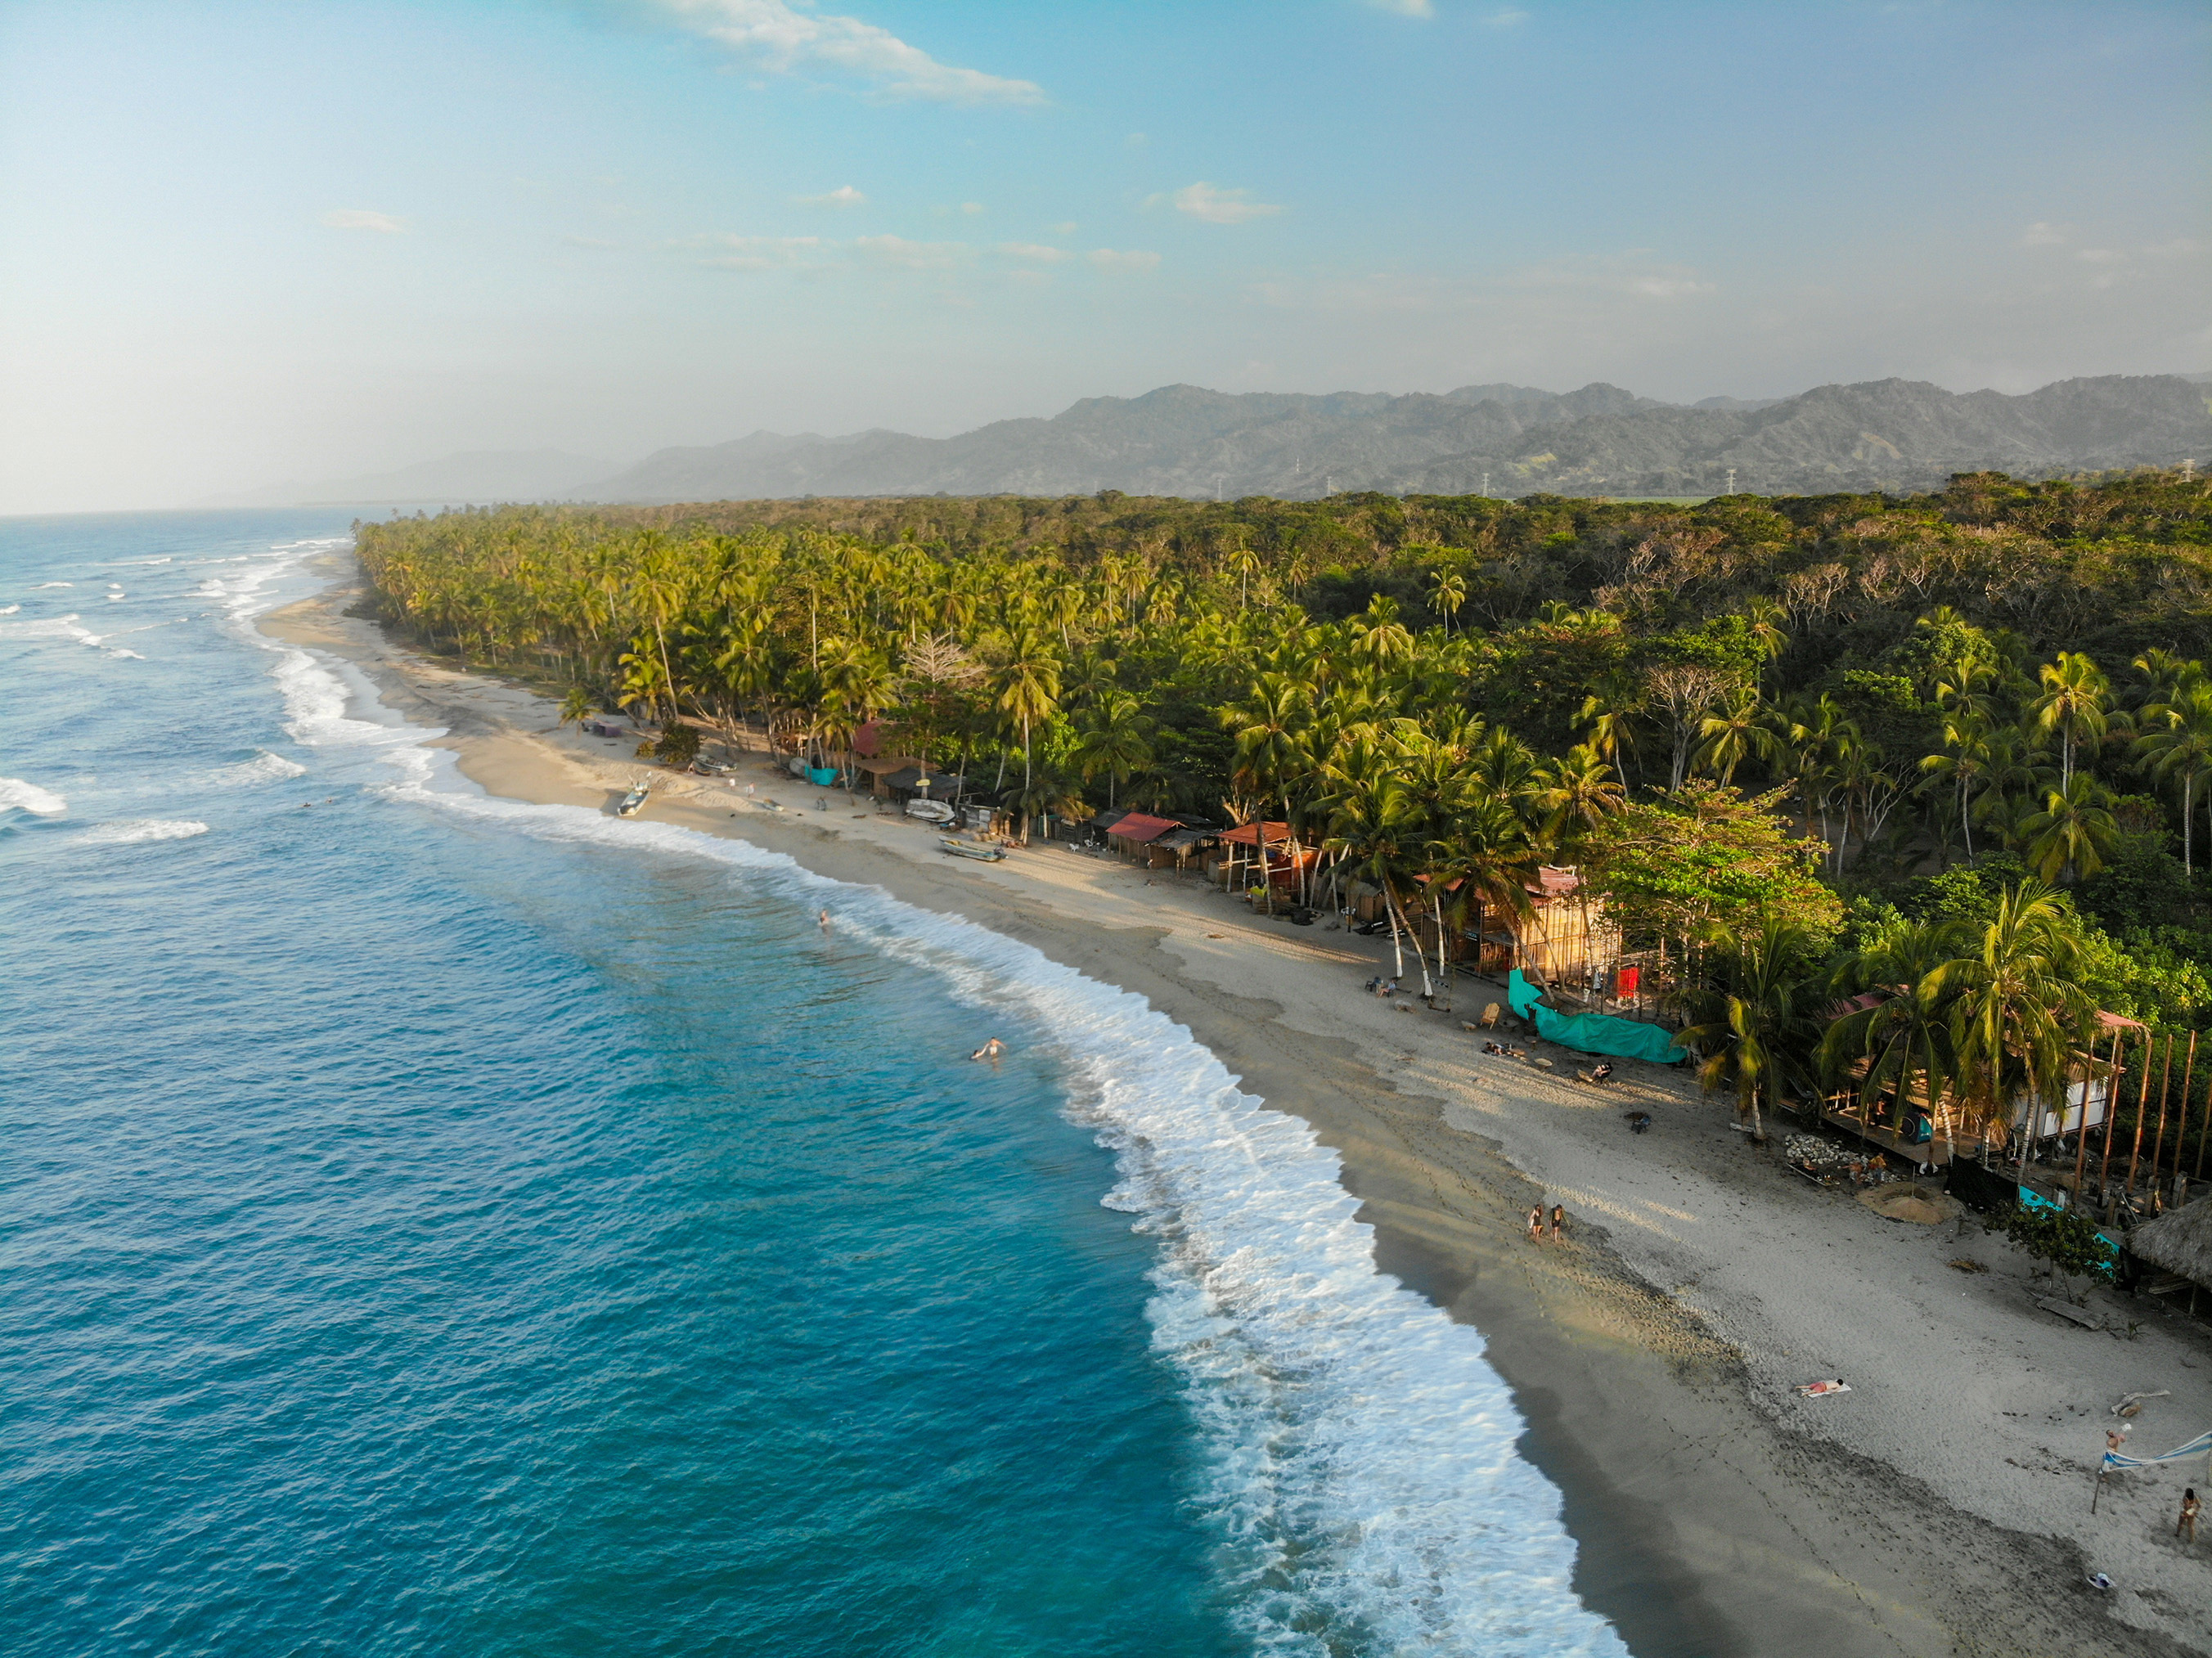 Las playas de color turquesa del Caribe colombiano.